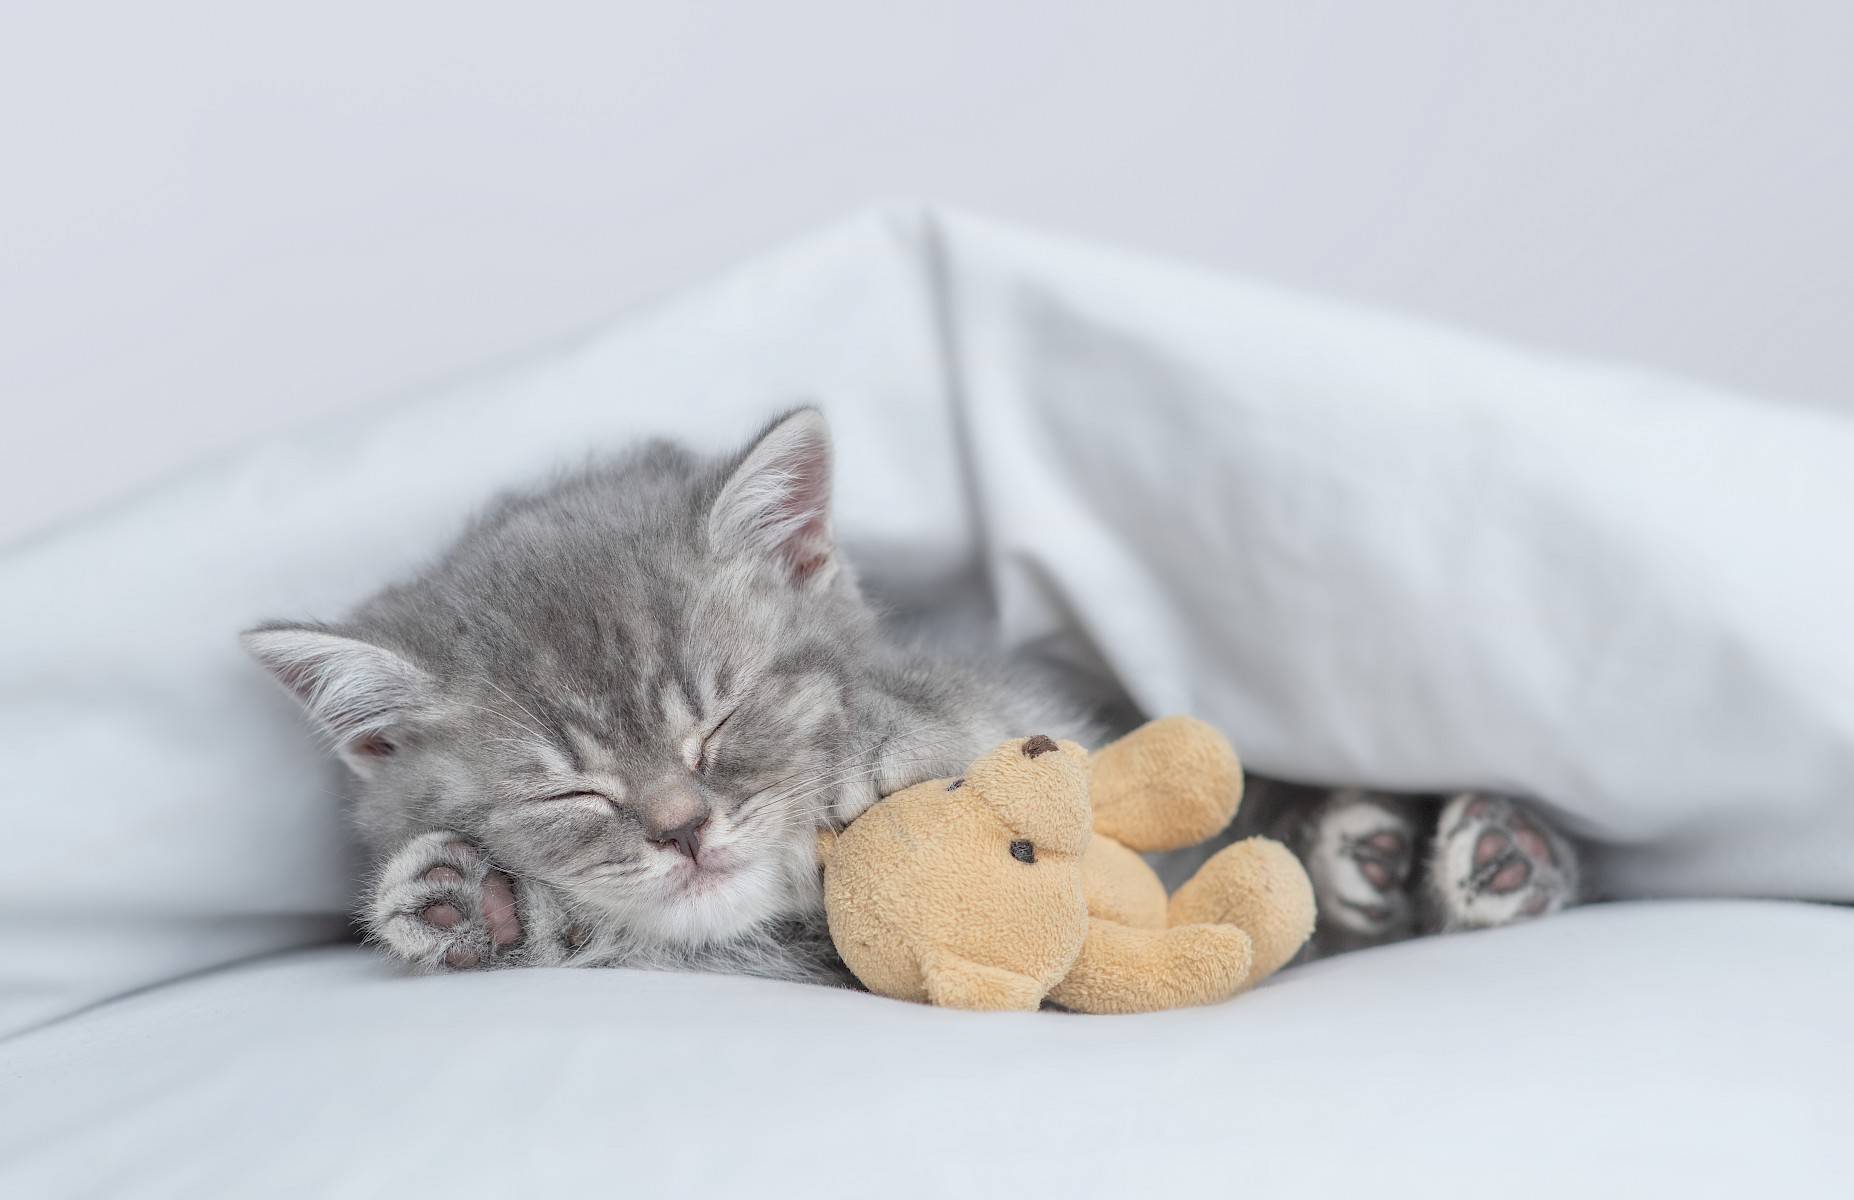 kitten slaapt met beertje naast zich